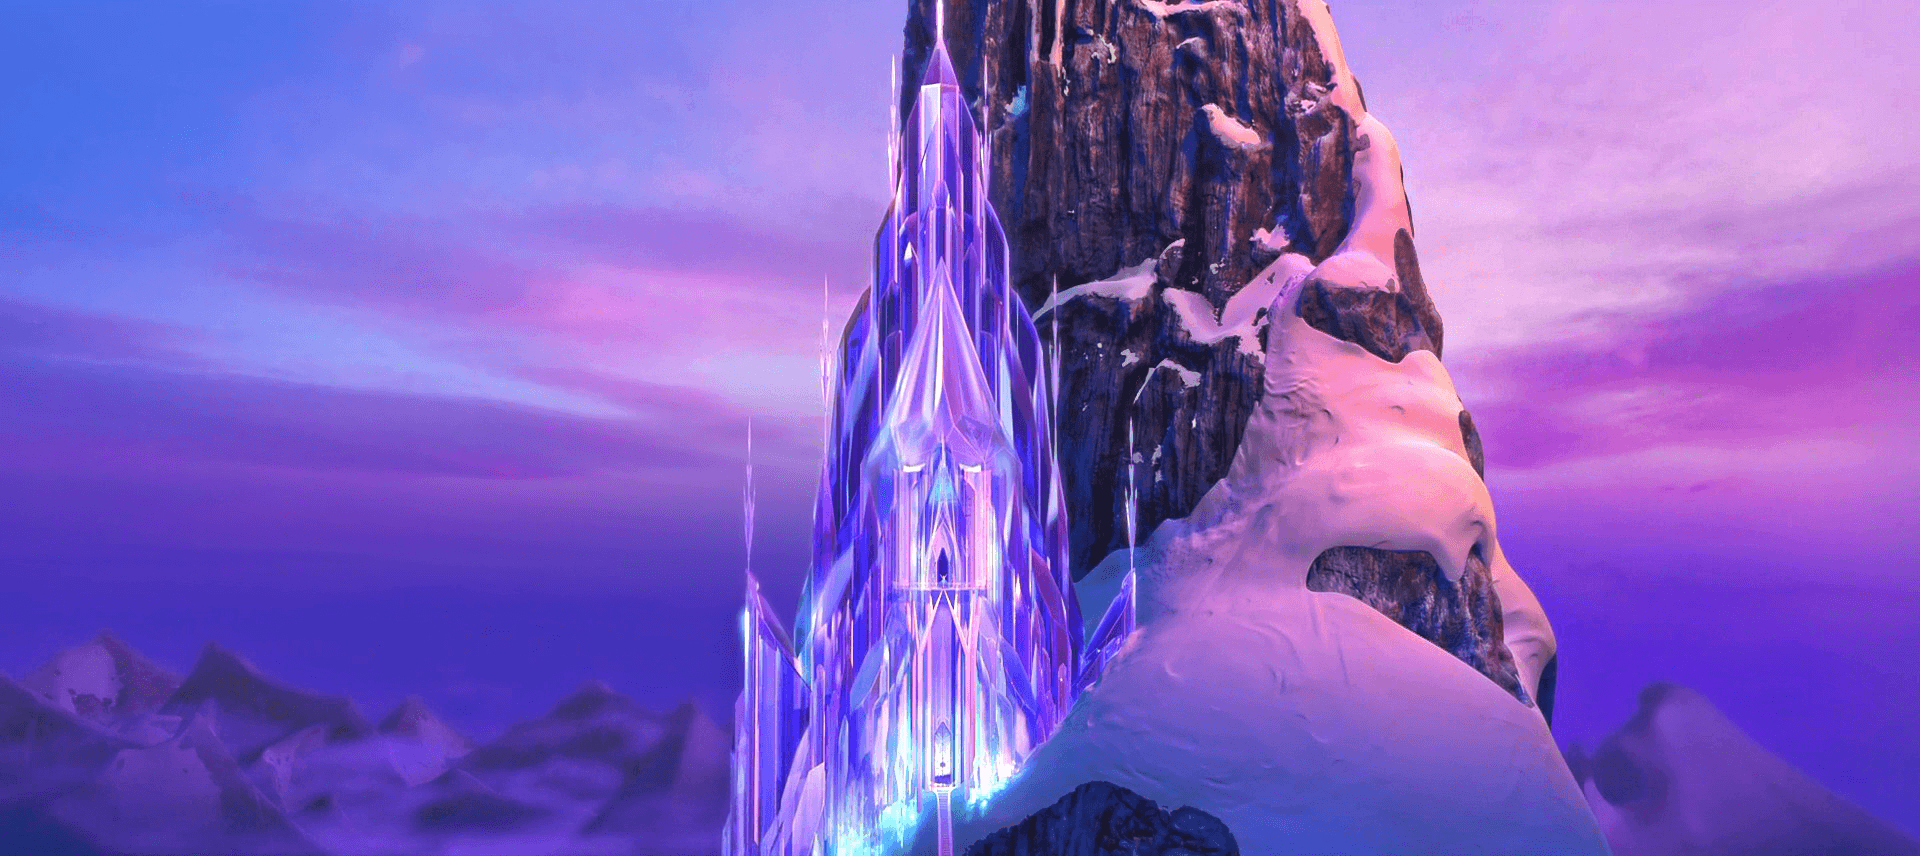 frozen castle 1080p